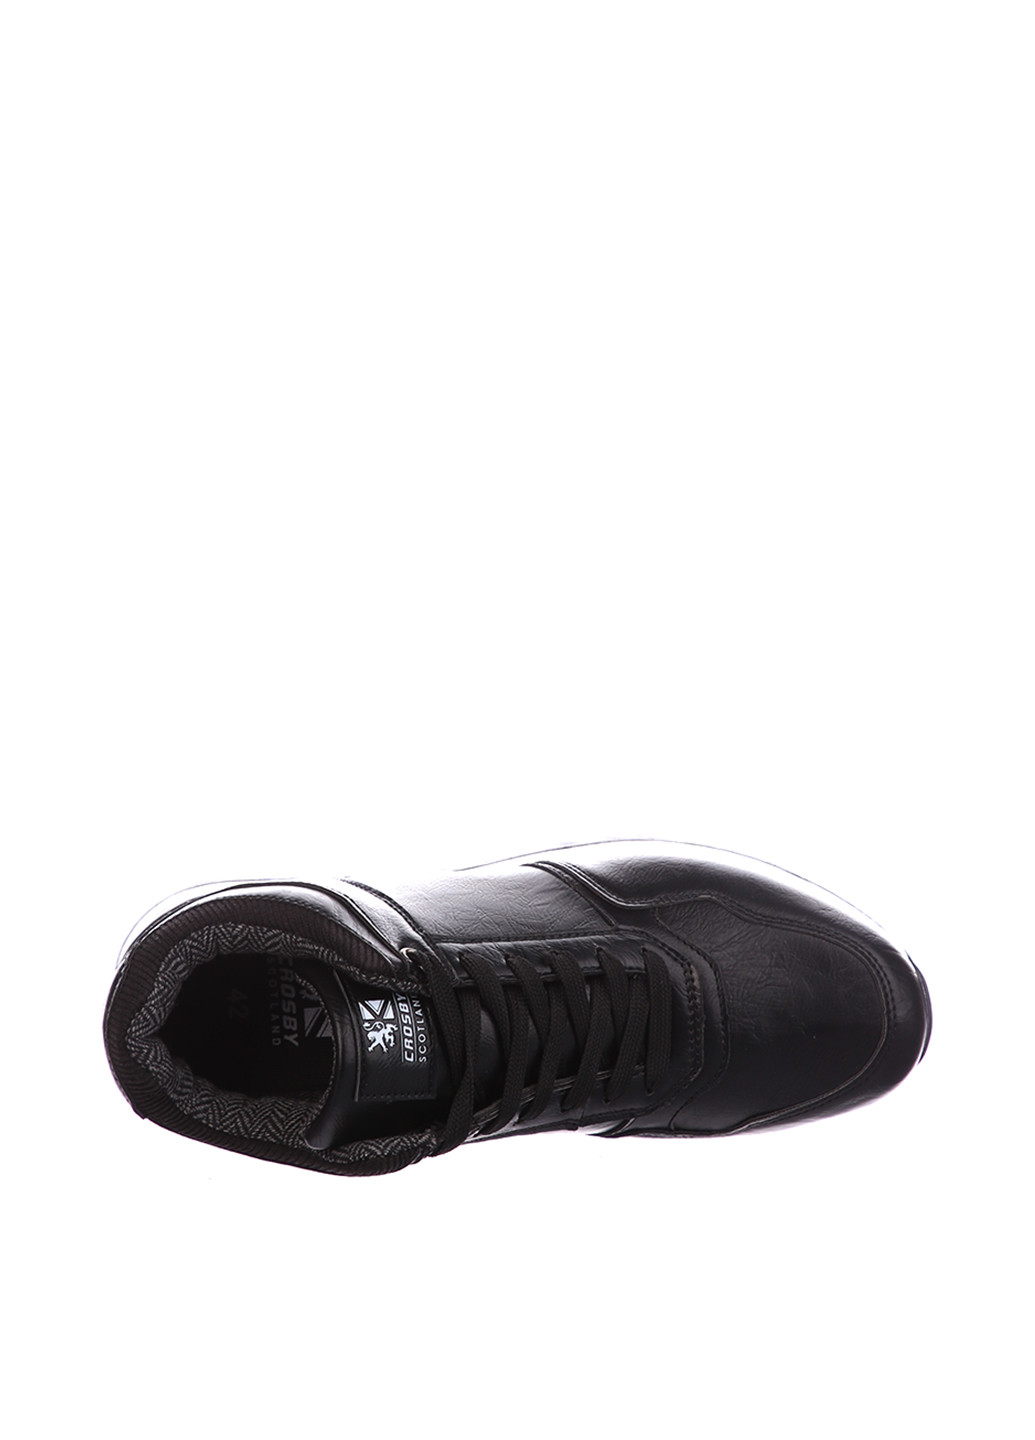 Черные осенние ботинки Crosby